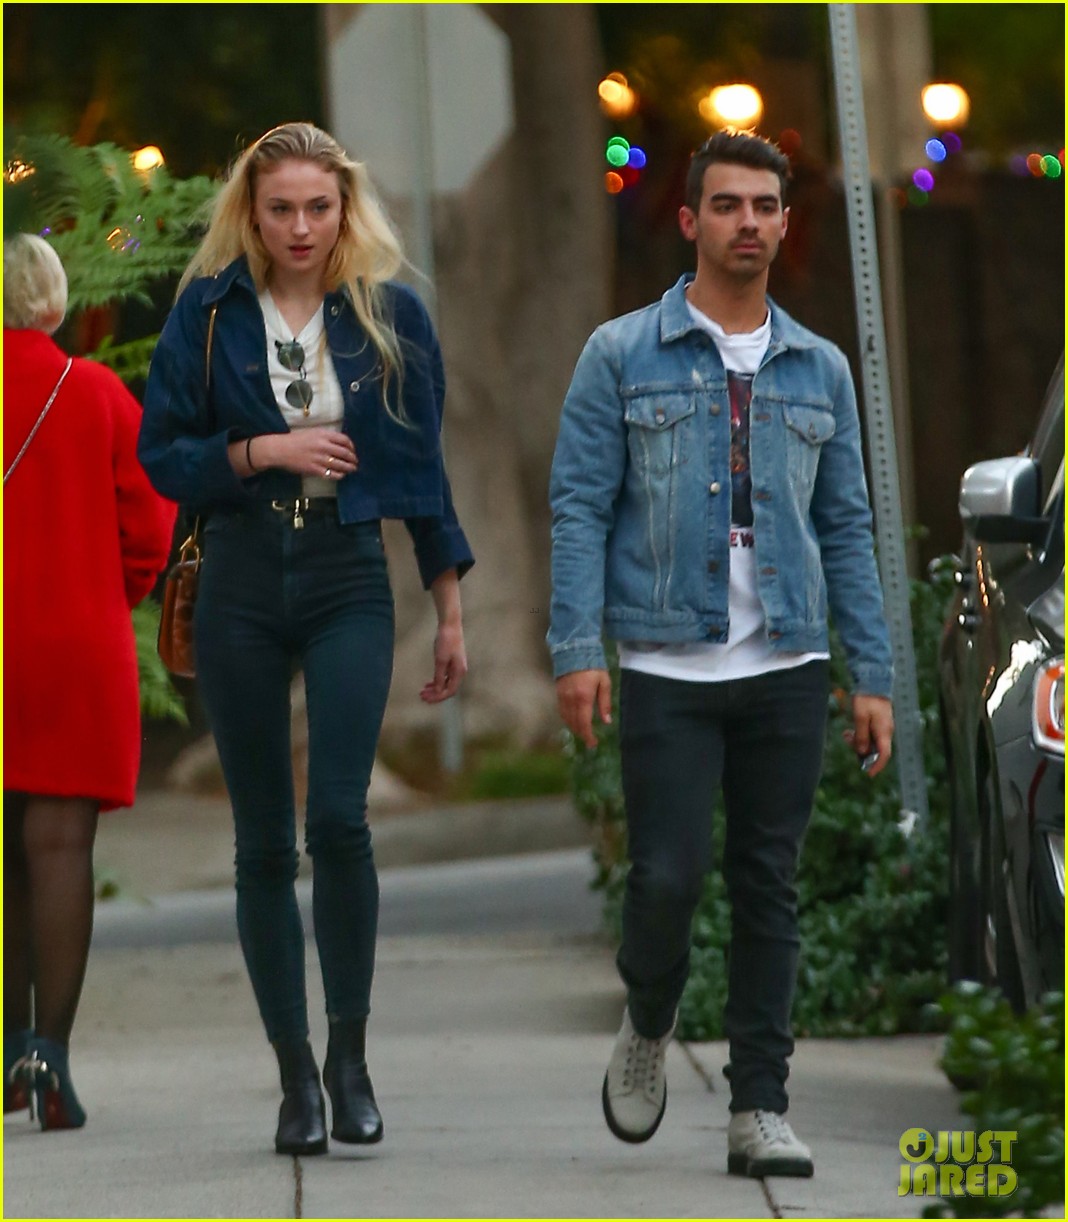 Joe Jonas & Sophie Turner Rock Coordinating Outfits in L.A.: Photo 3837388, Joe Jonas, Sophie Turner Photos